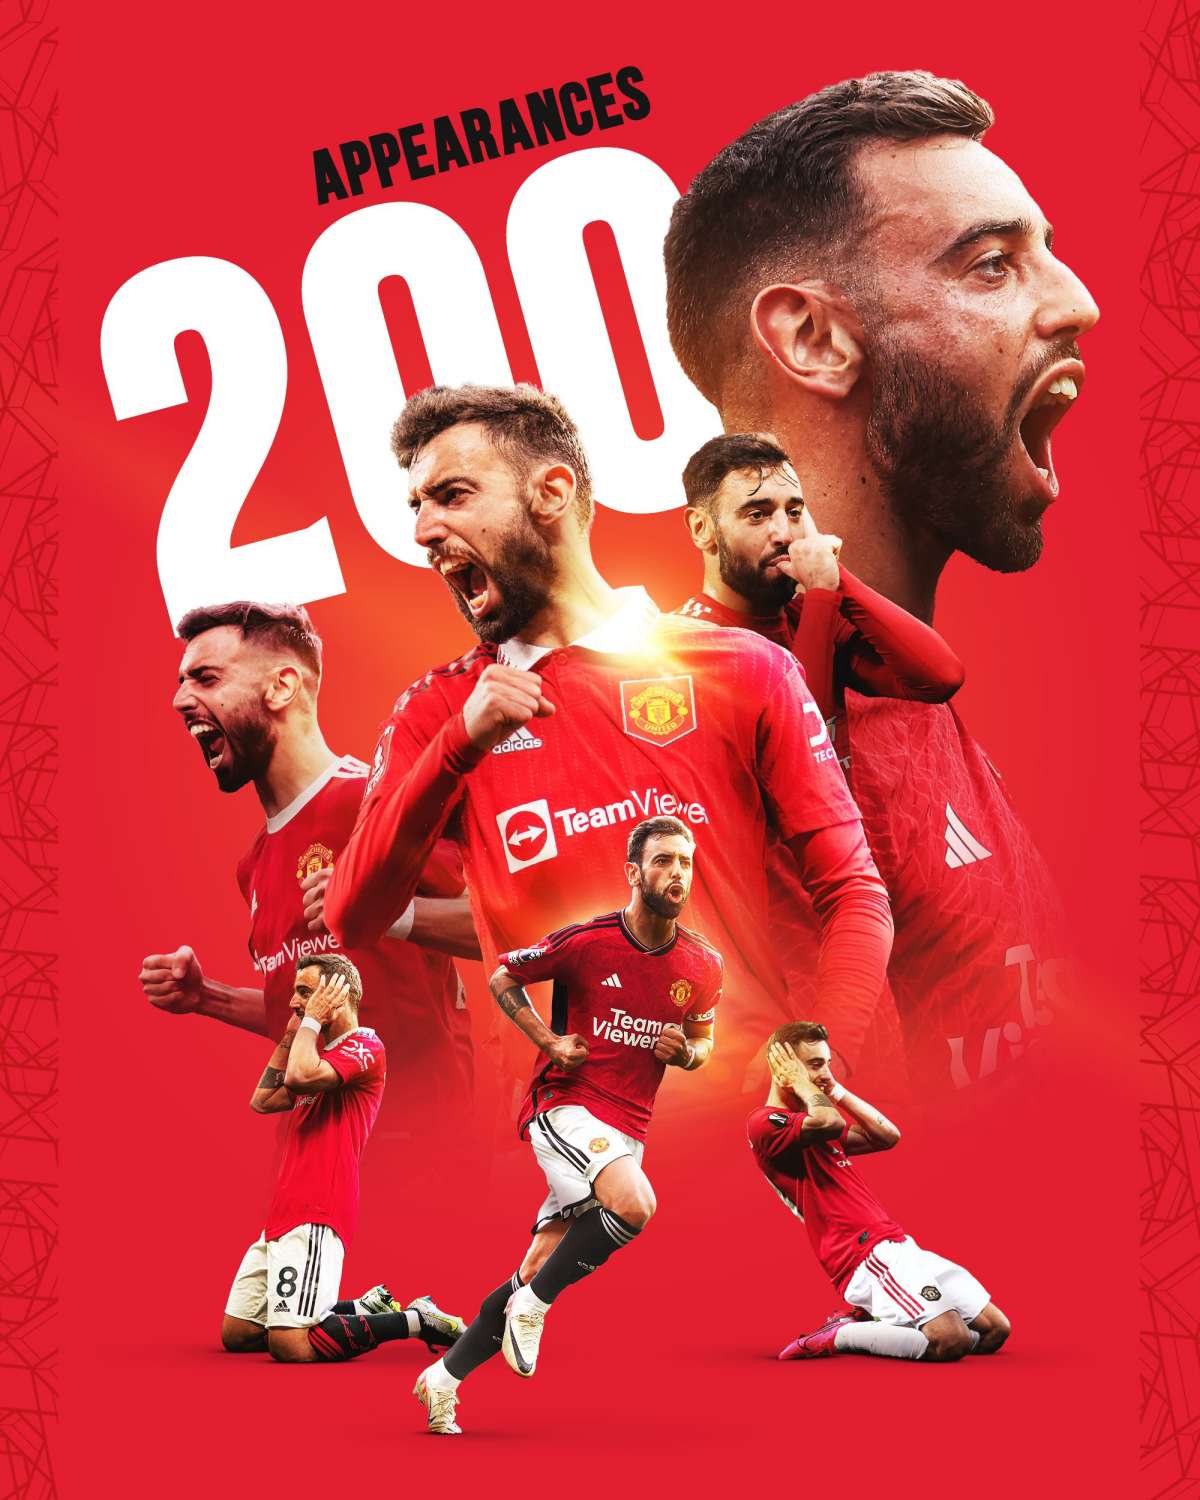 Tiền vệ người Bồ Đào Nha đánh dấu trận đấu thứ 200 trong màu áo The Red Devils. Ảnh: Manchester United